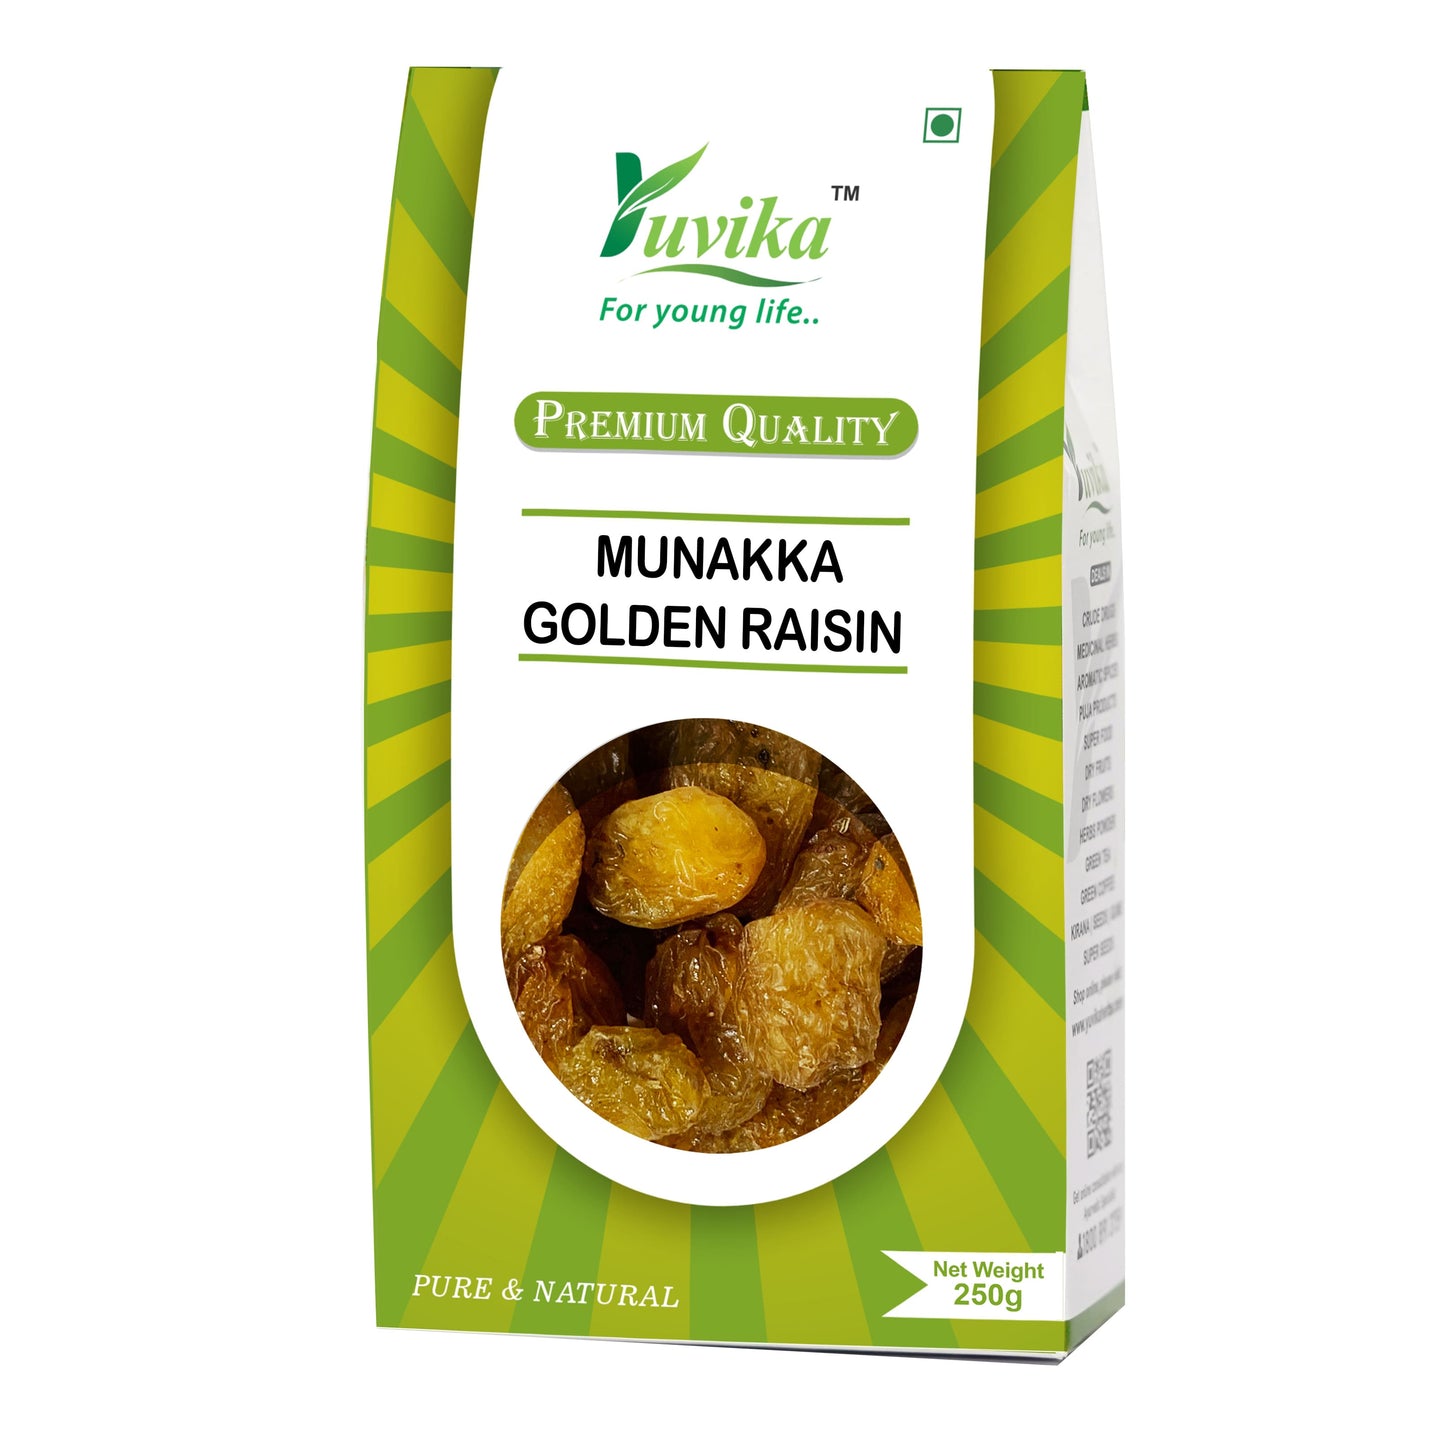 Munakka - Bhura Munakka - Bhoora Munnaka - Brown Raisin - Currant - Dry Grapes (250g)